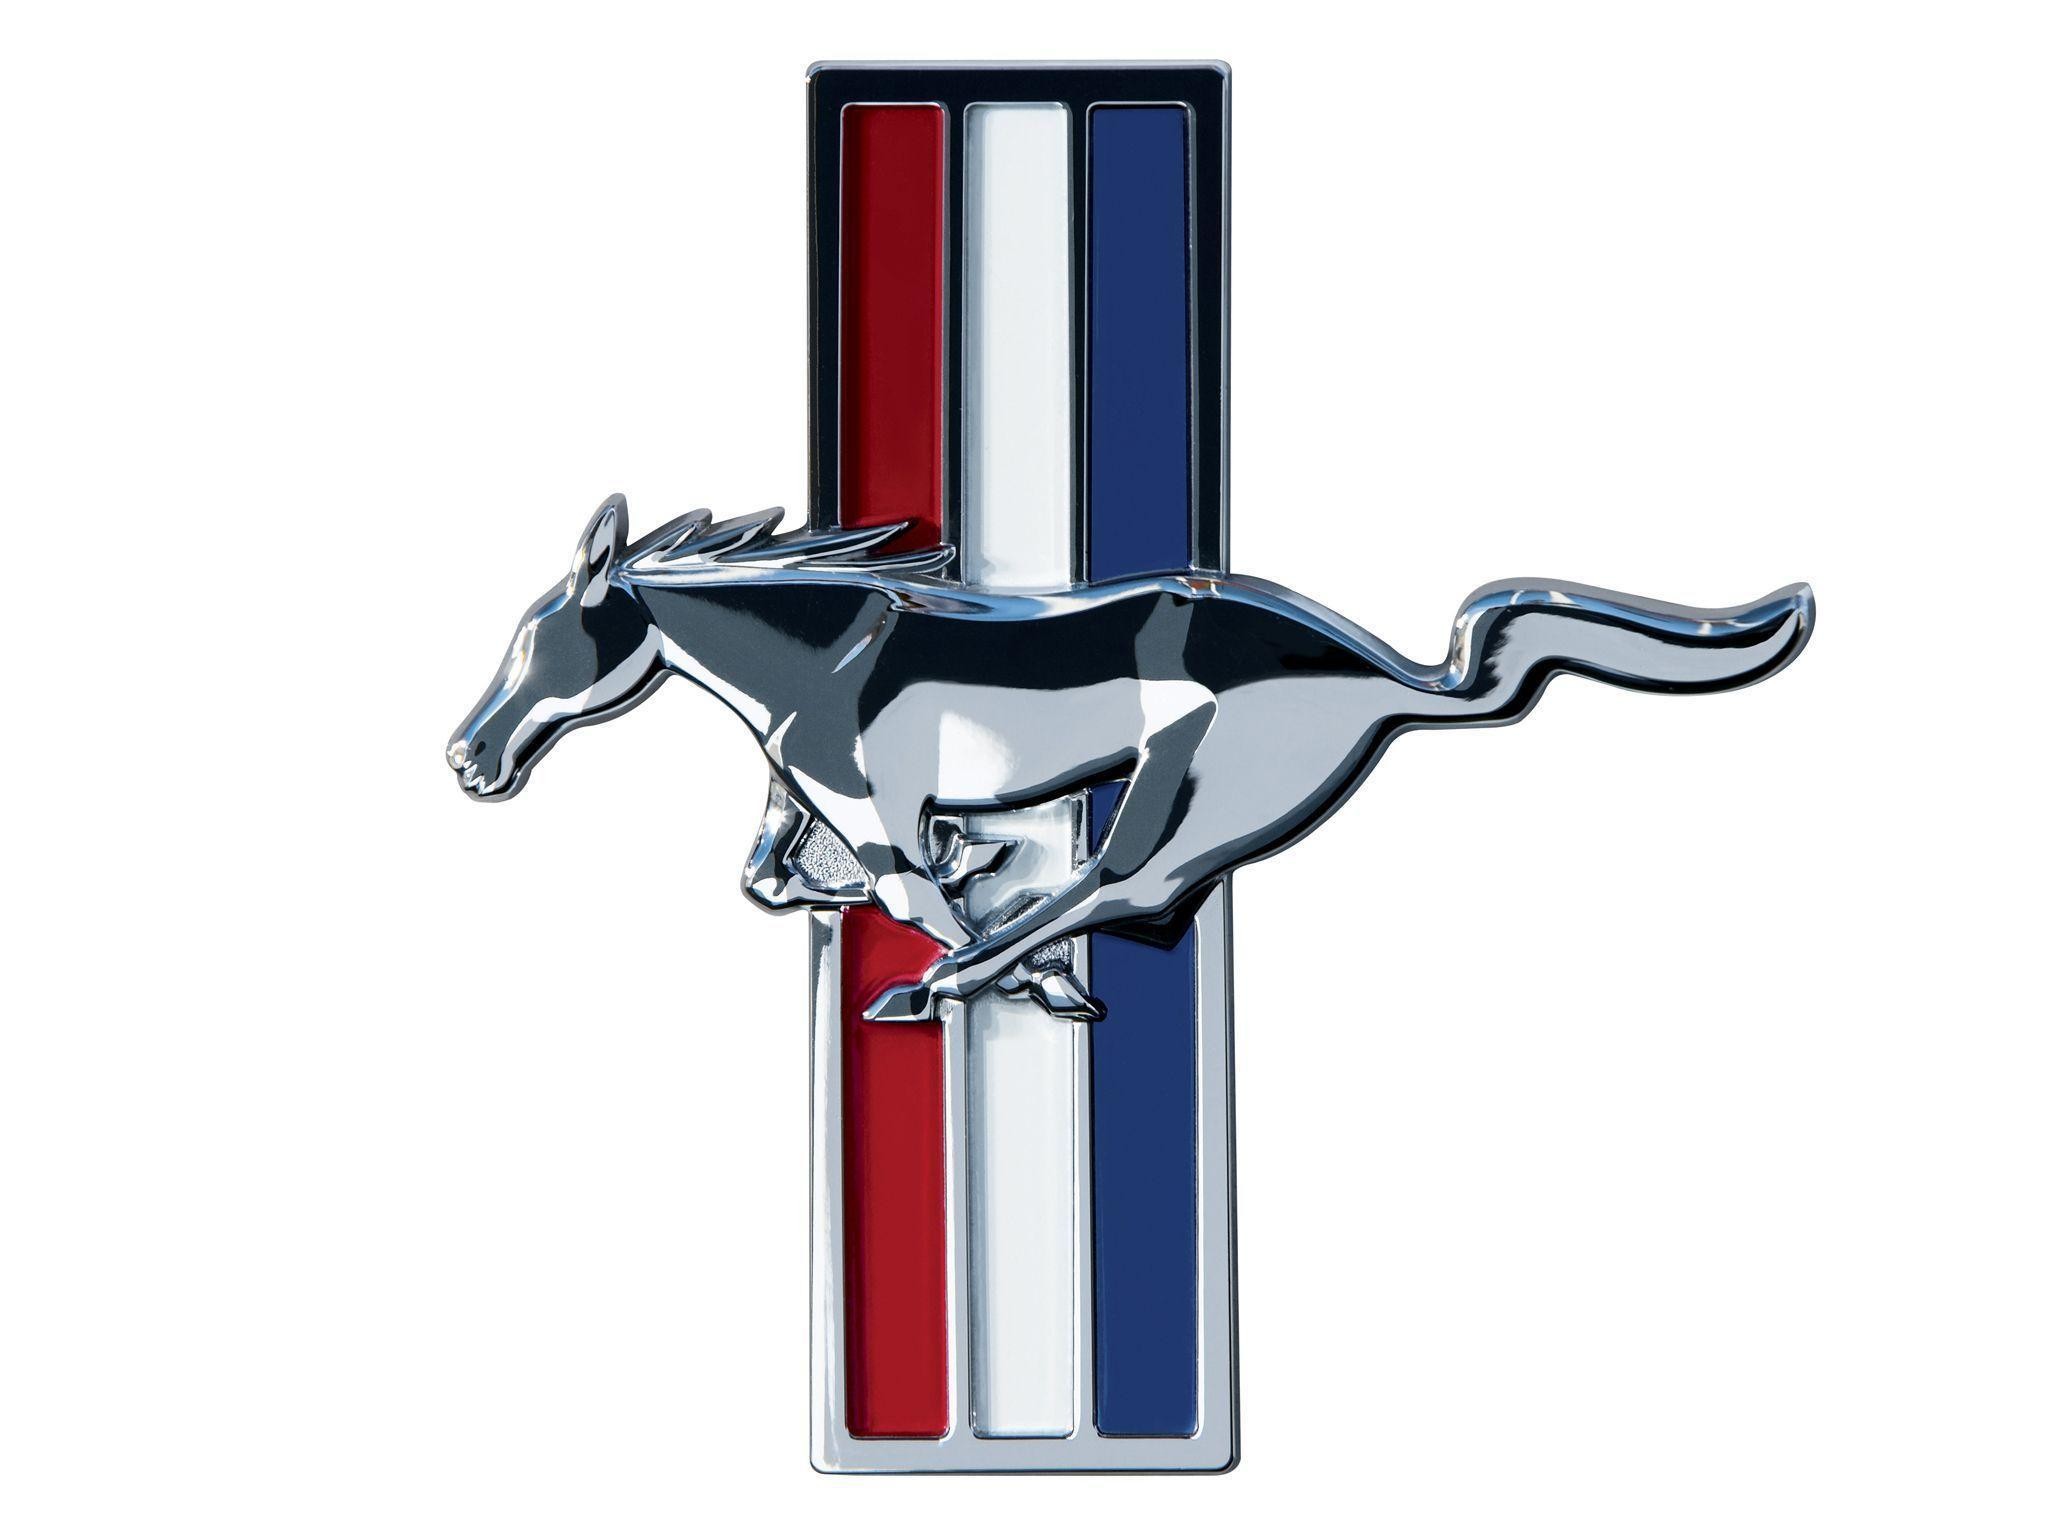 2048x1536 Ford Mustang Logo Wallpaper #8805 | Hdwidescreens.